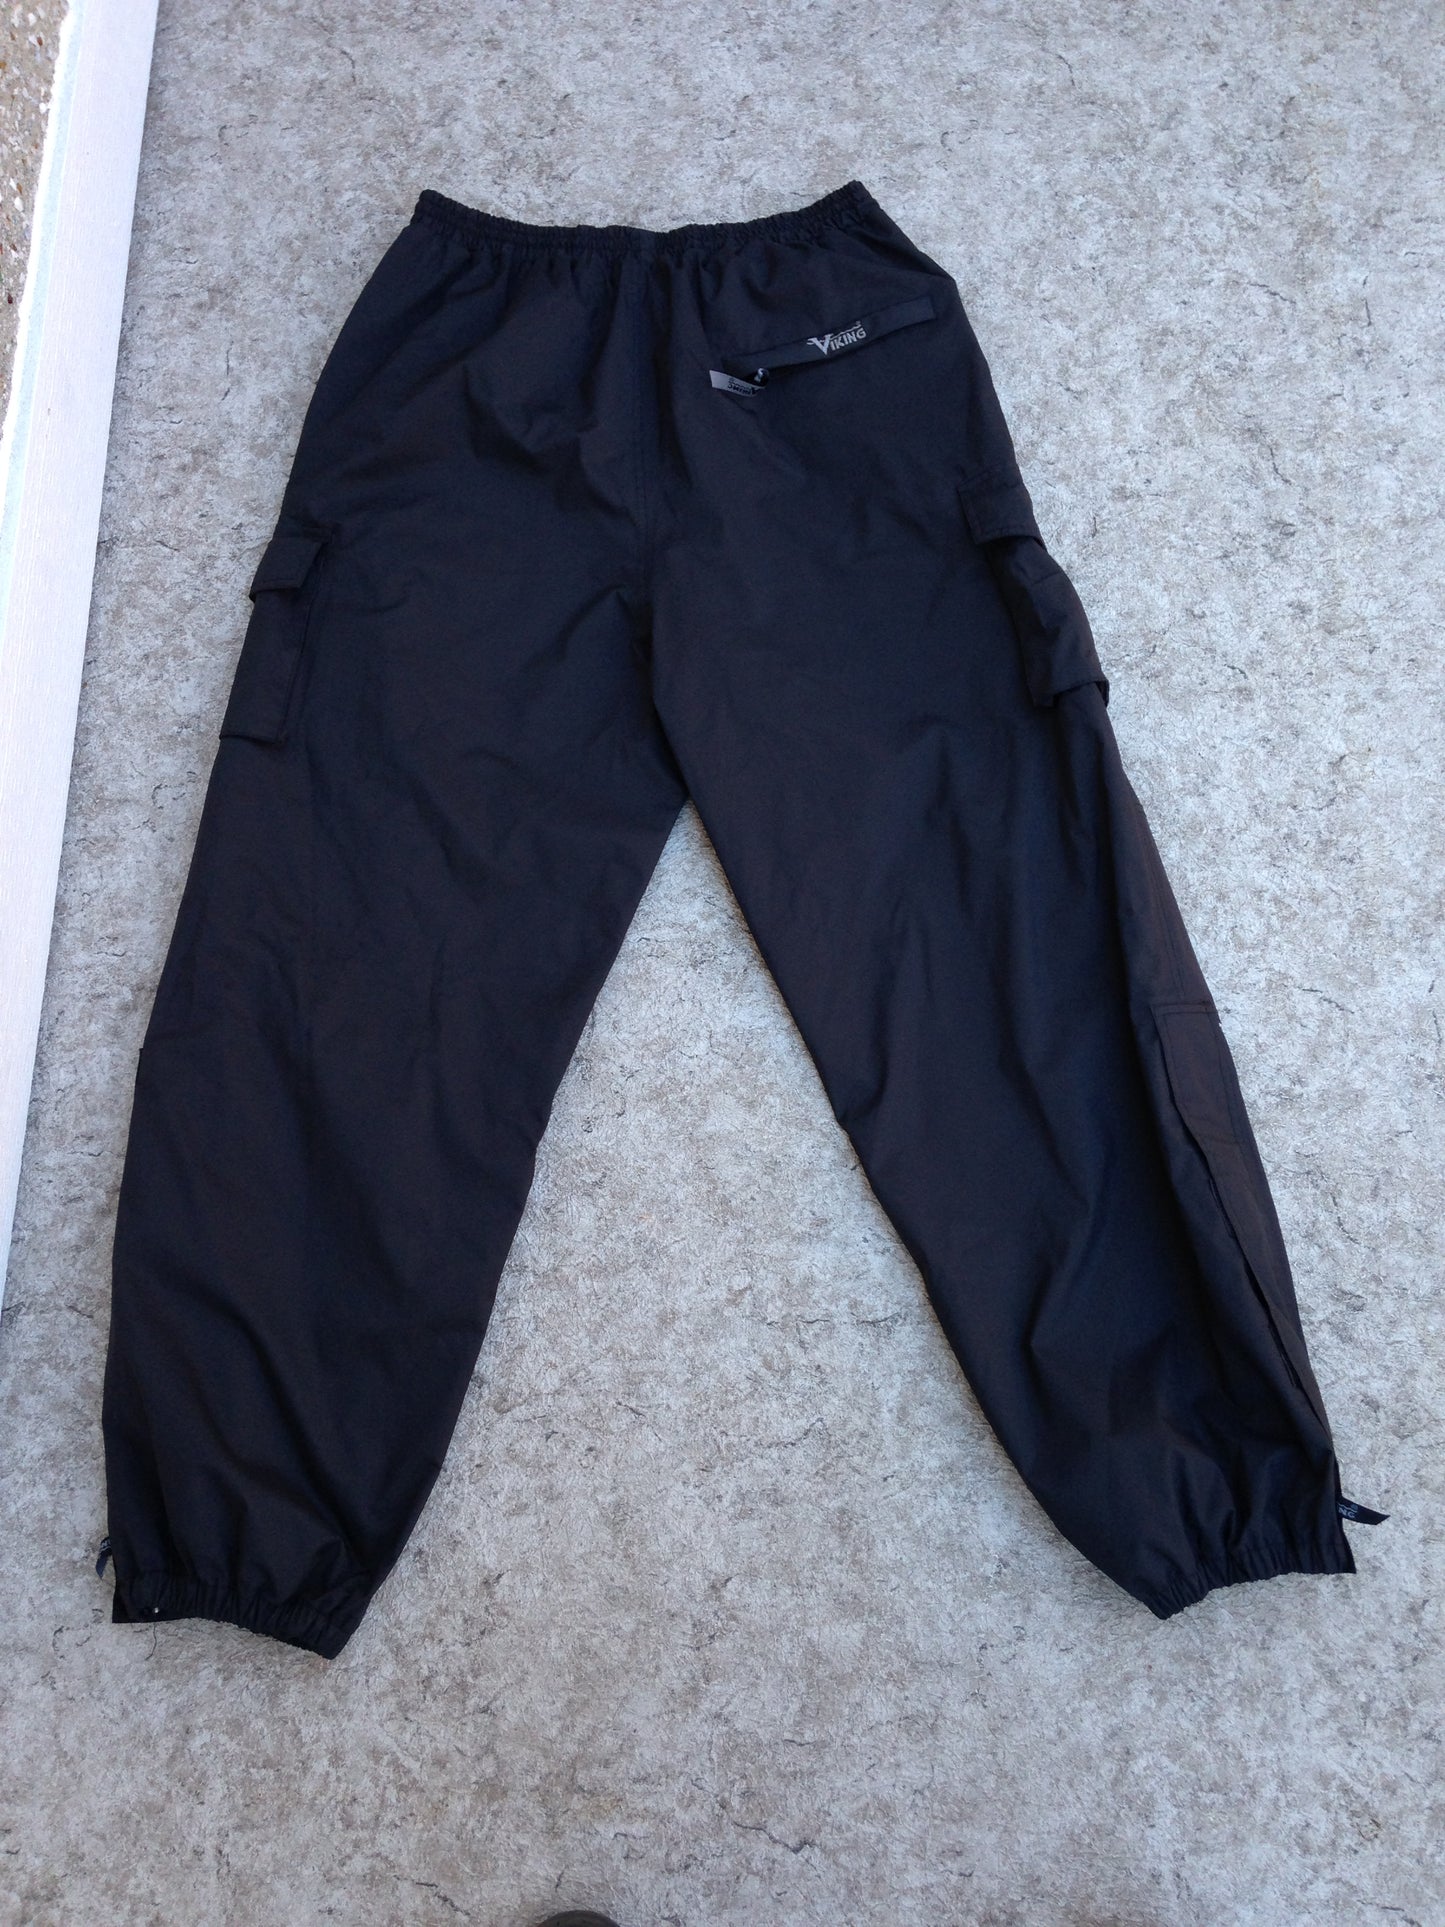 Rain Pants Men's Size X Large Viking Black Waterproof Commercial Grade Excellent Condition